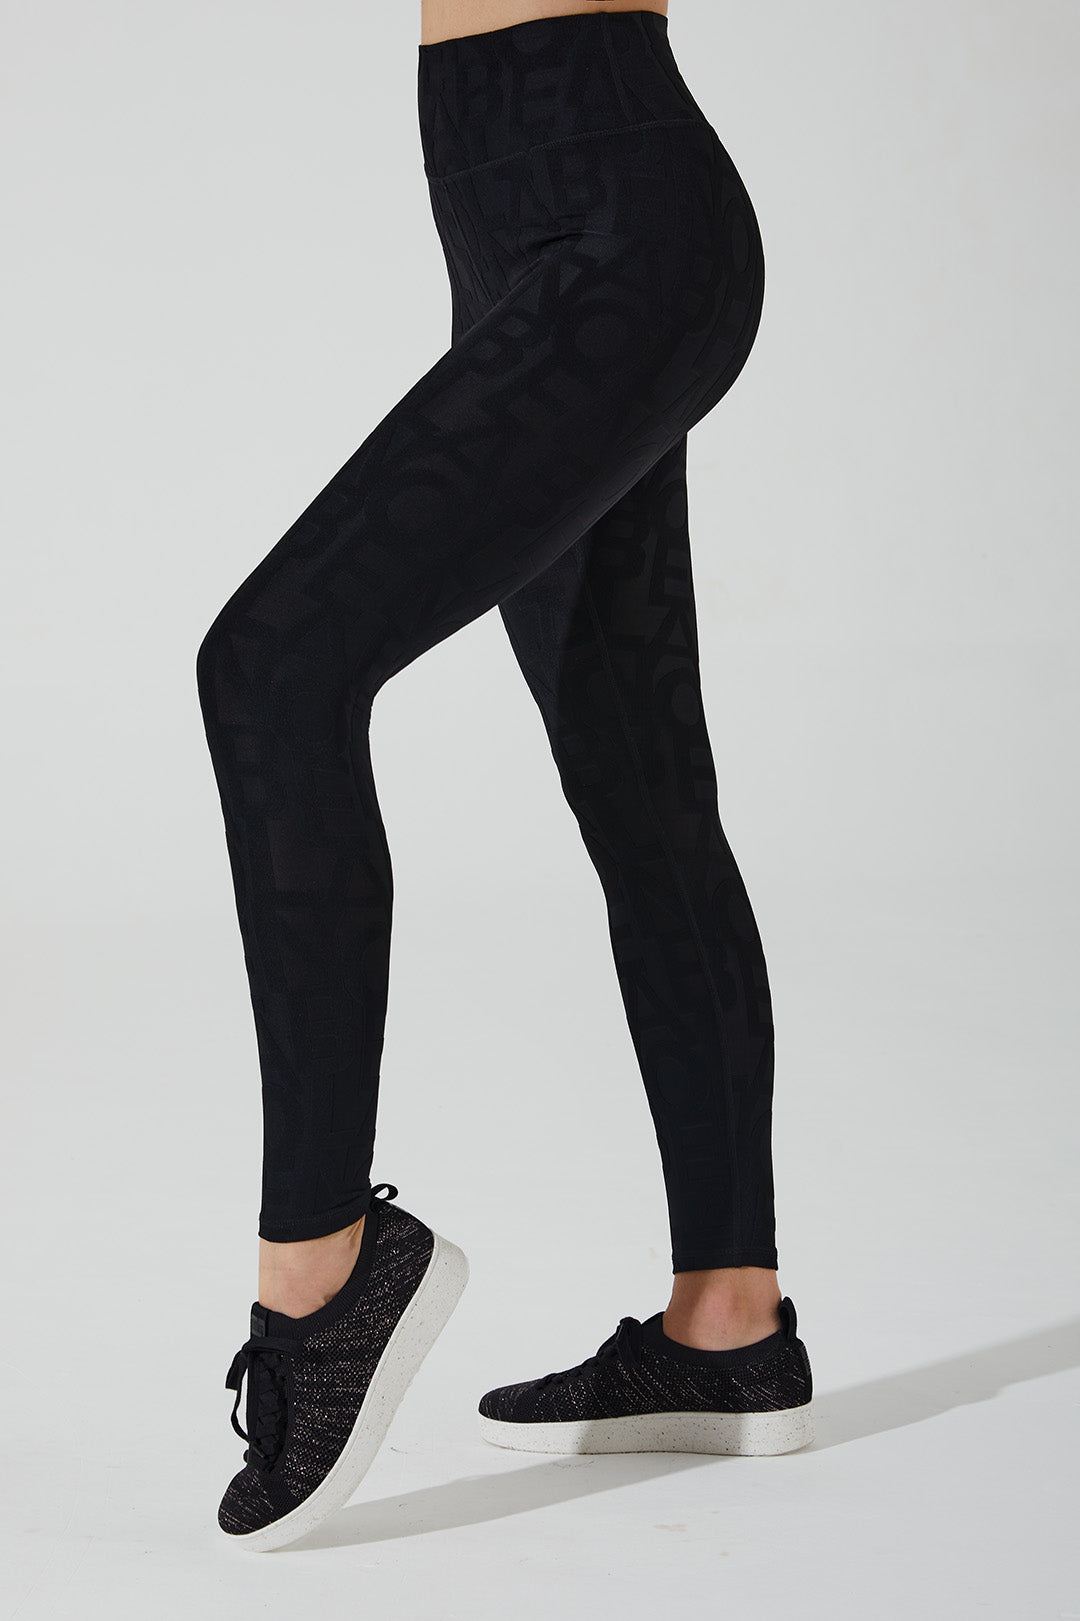 Stylish carbon black 3D leggings for women - Deese Fleur Legging OW-0073-WLG-BK.